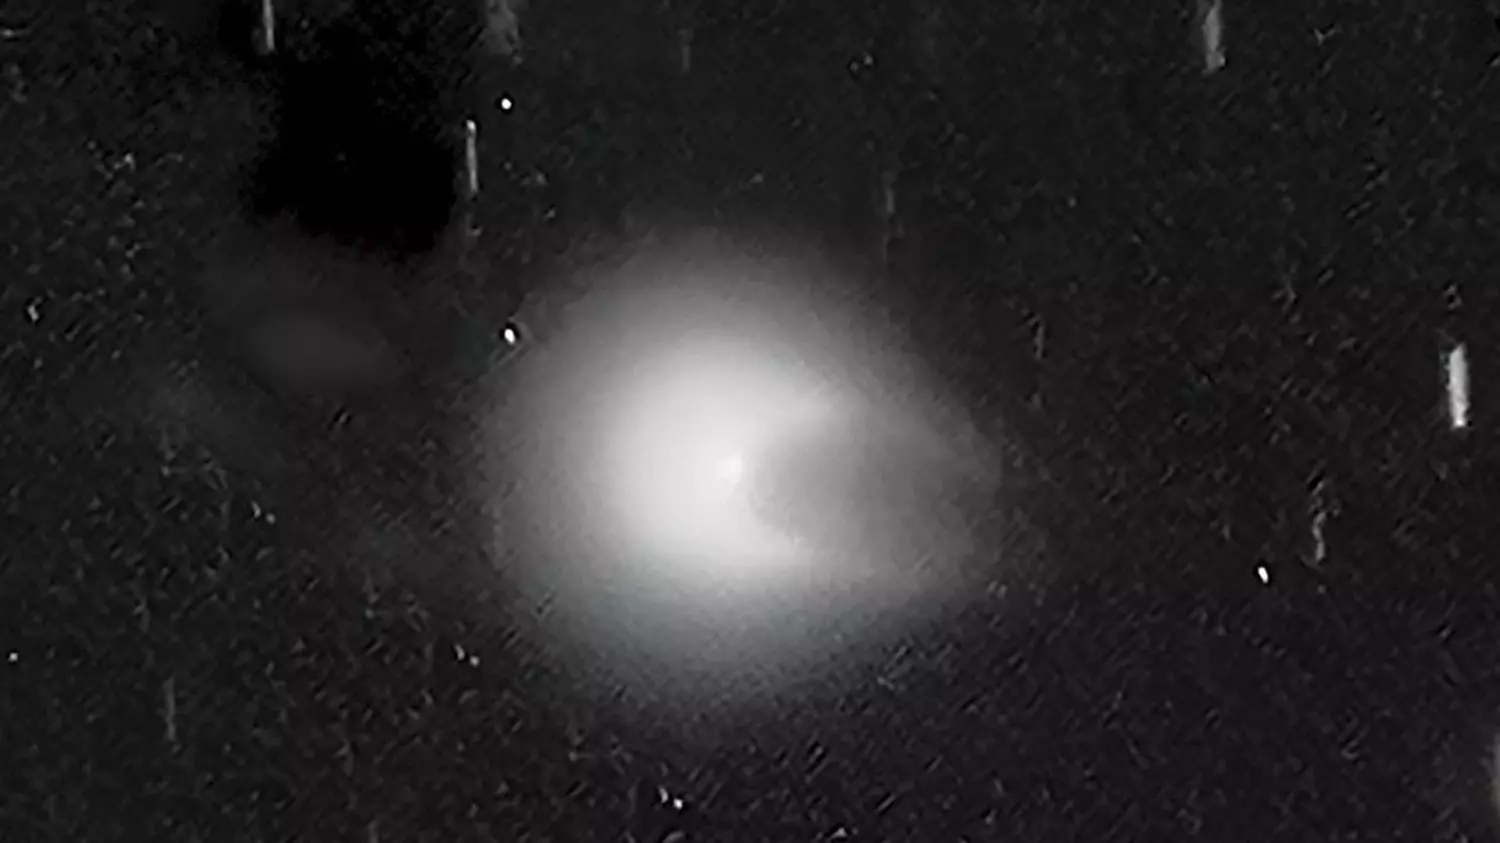 Газ и пыль, окружающие комету, приняли форму подковы. Некоторые наблюдатели считают, что это напоминает дьявола с рогами. Иногда комету сравнивают с космическим кораблем Хана Соло из «Звездных войн»